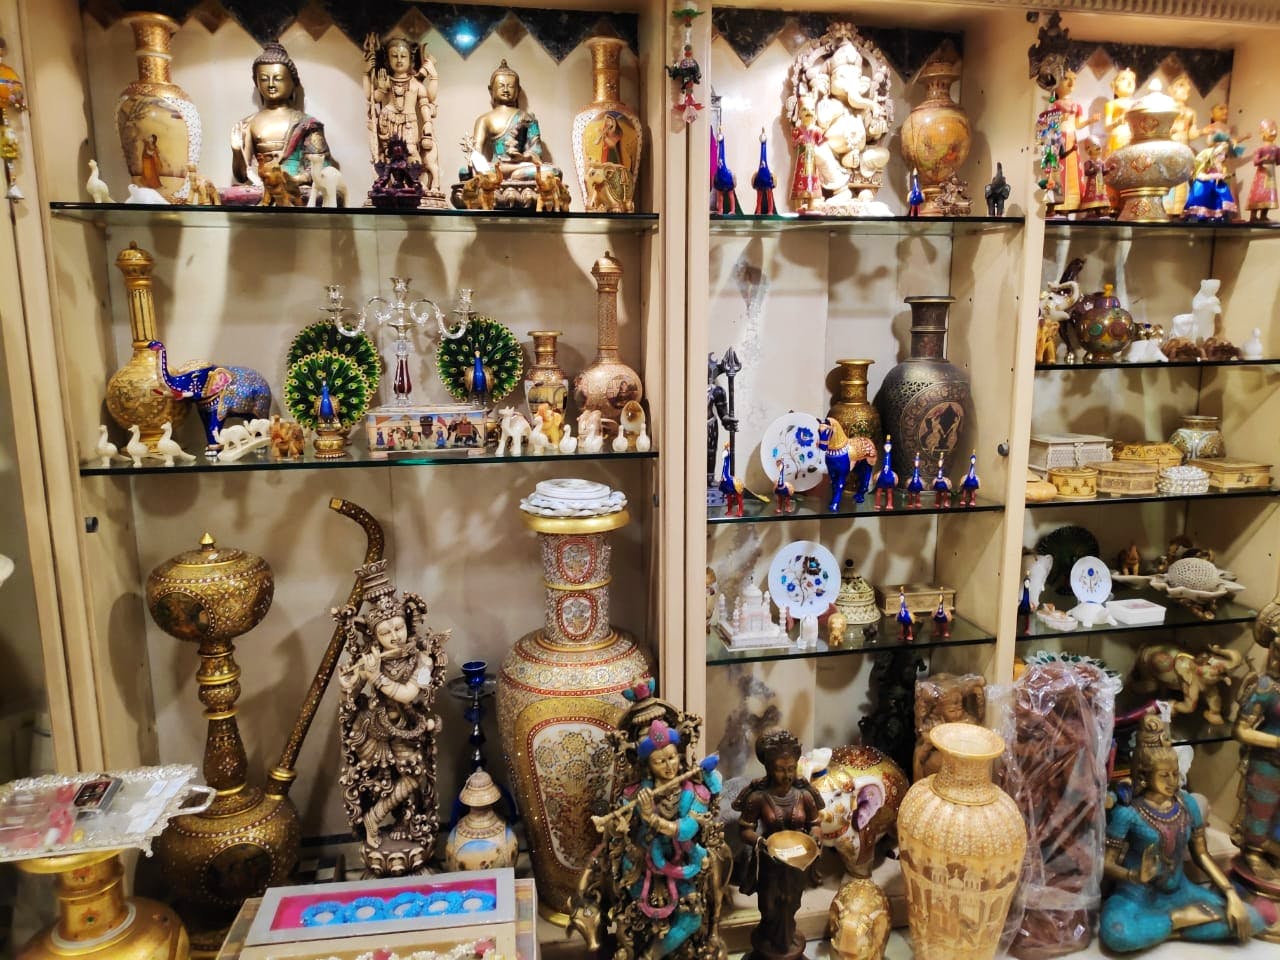 Collection,Souvenir,Ceramic,Toy,Antique,Display case,Porcelain,Art,Bazaar,Building